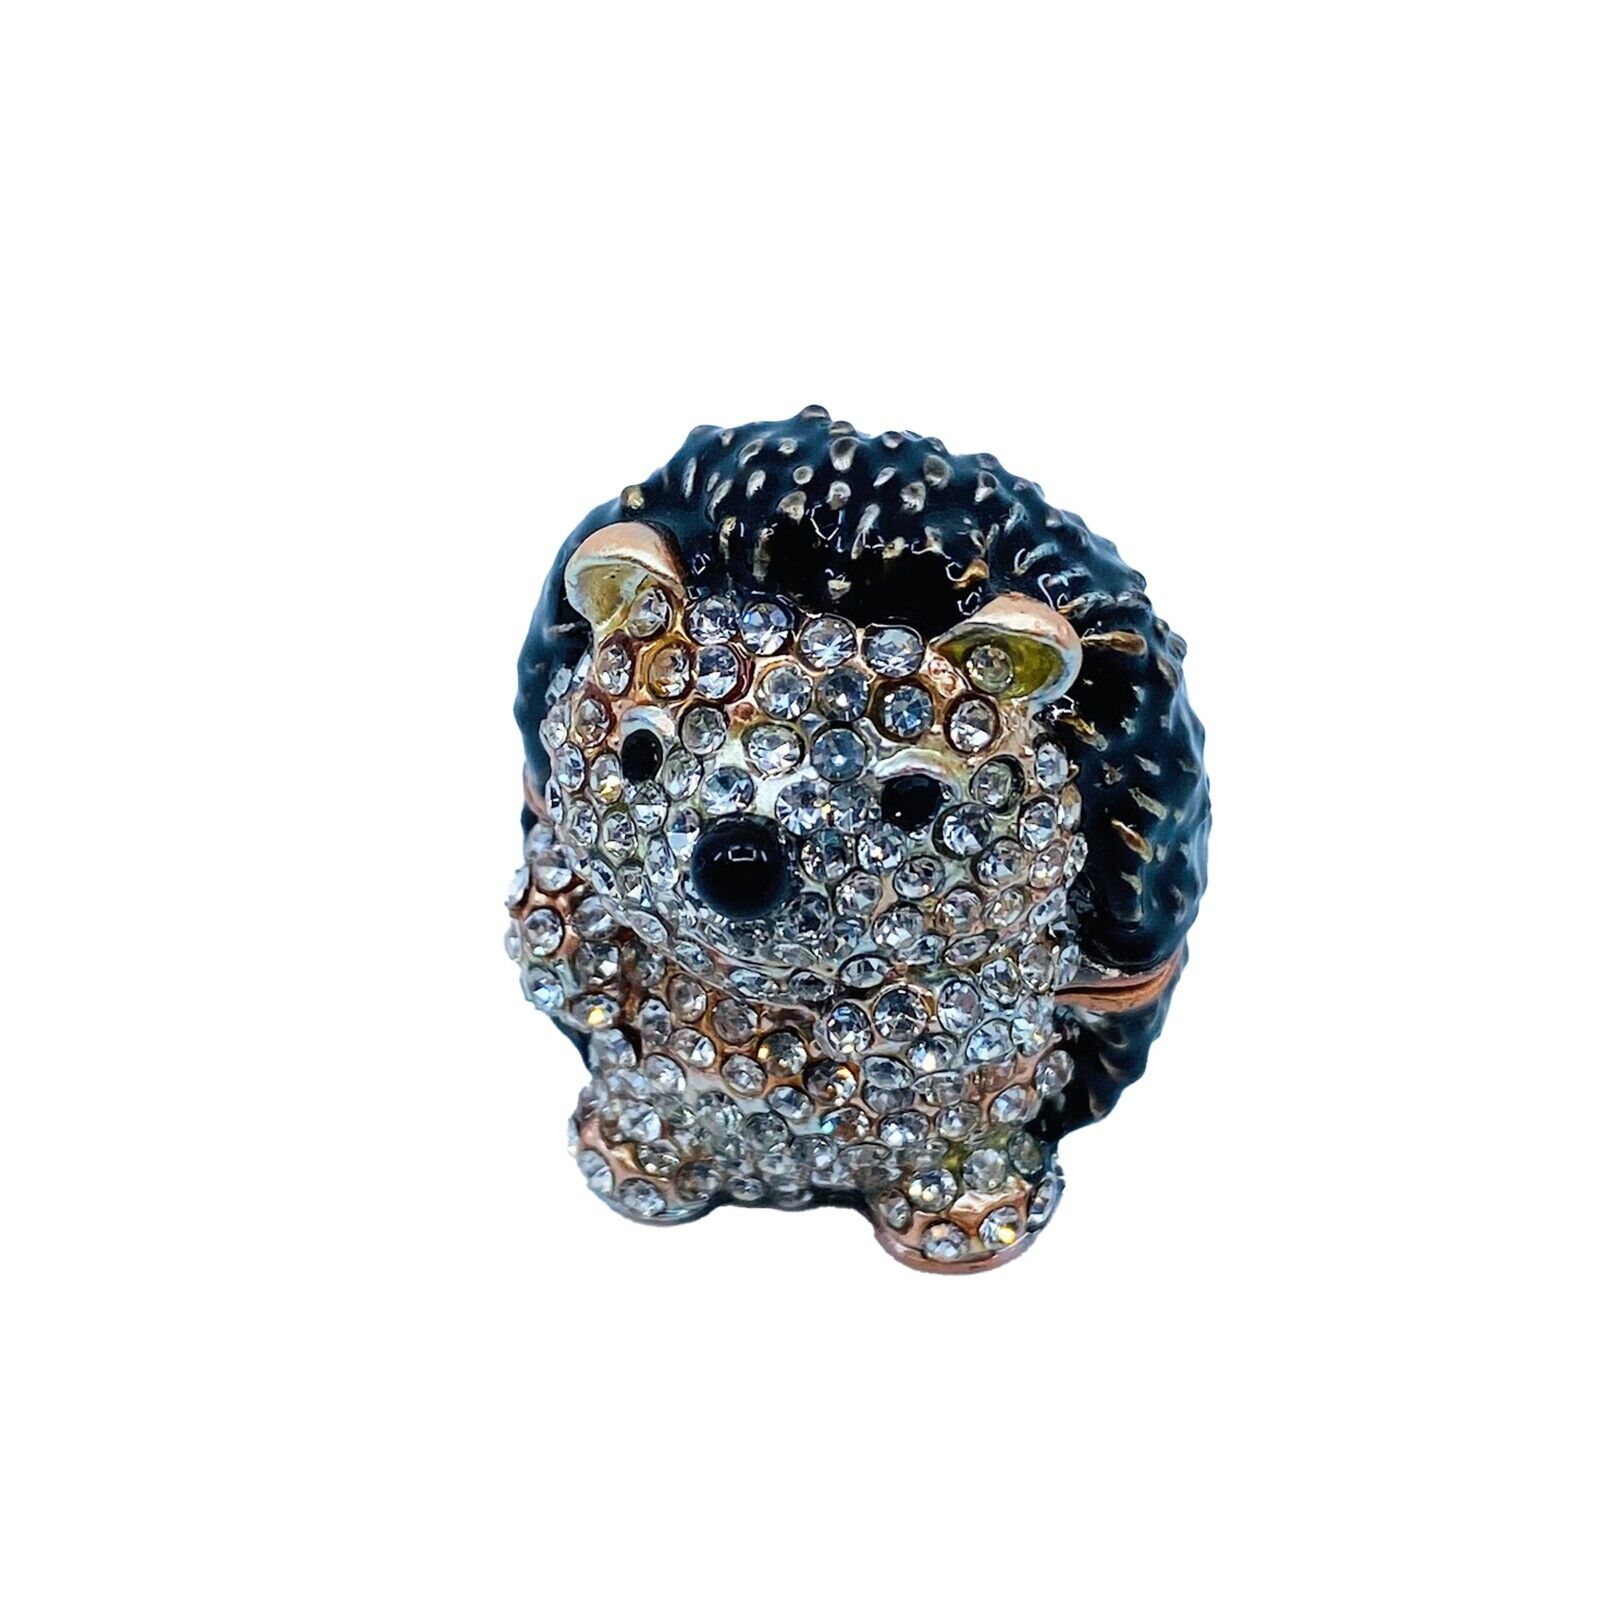 Kubla Craft Bejeweled Enameled Trinket Box: Hedgehog Box, Item# 3309